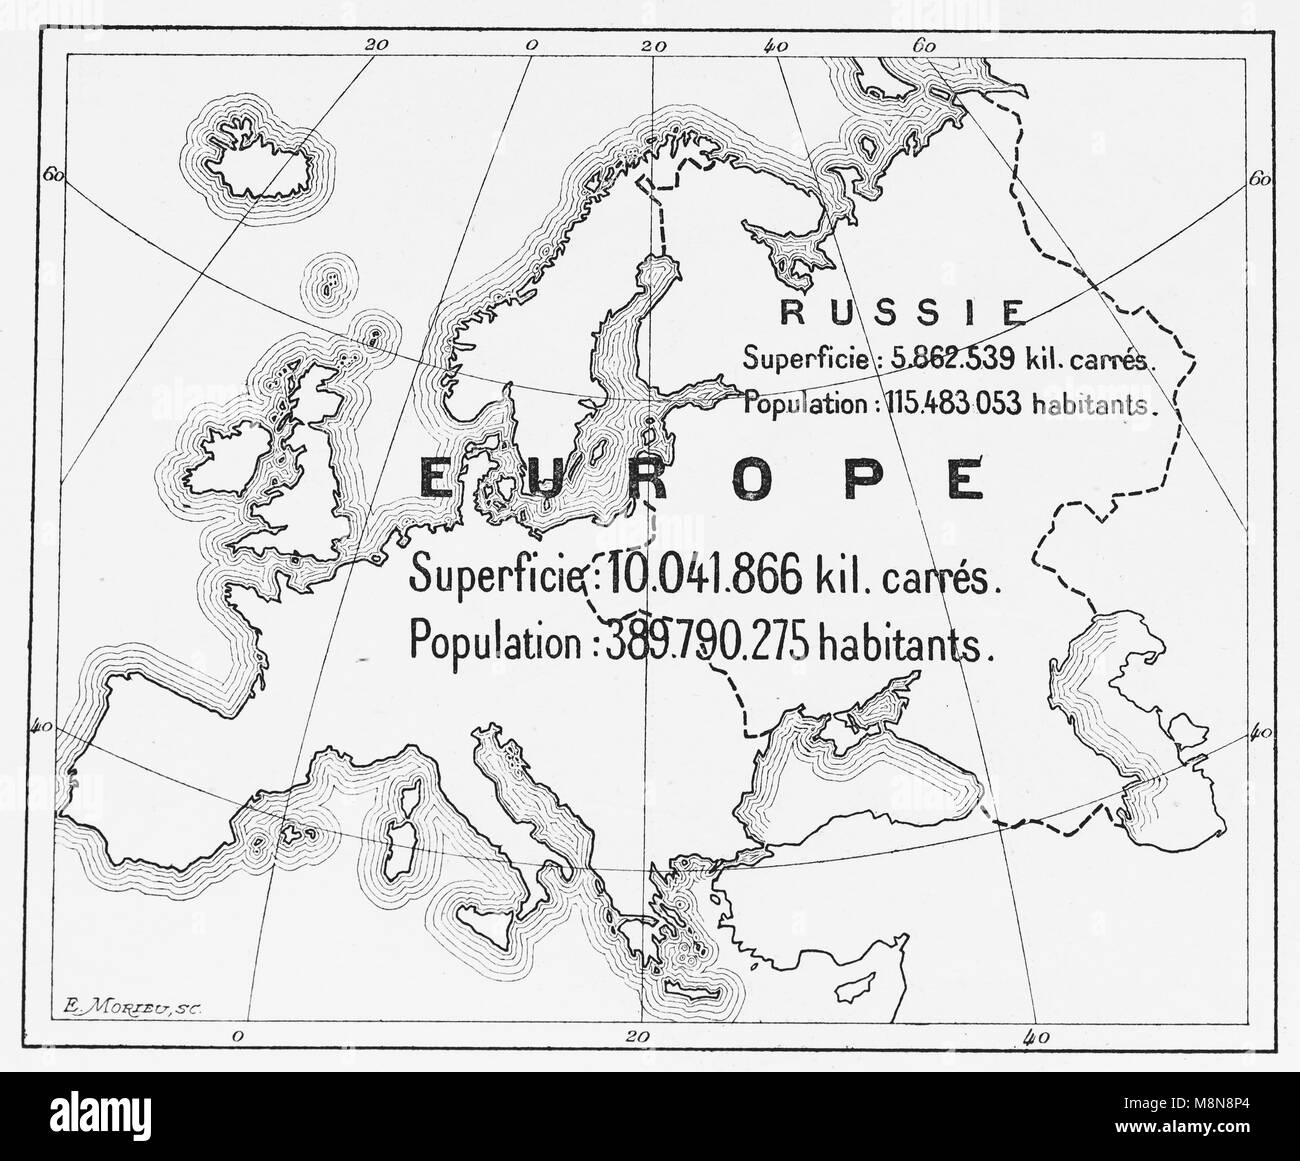 Carte de l'Europe et partie européenne de la Russie en 1900, photo de l'hebdomadaire français journal l'illustration, 27 Octobre 1900 Banque D'Images